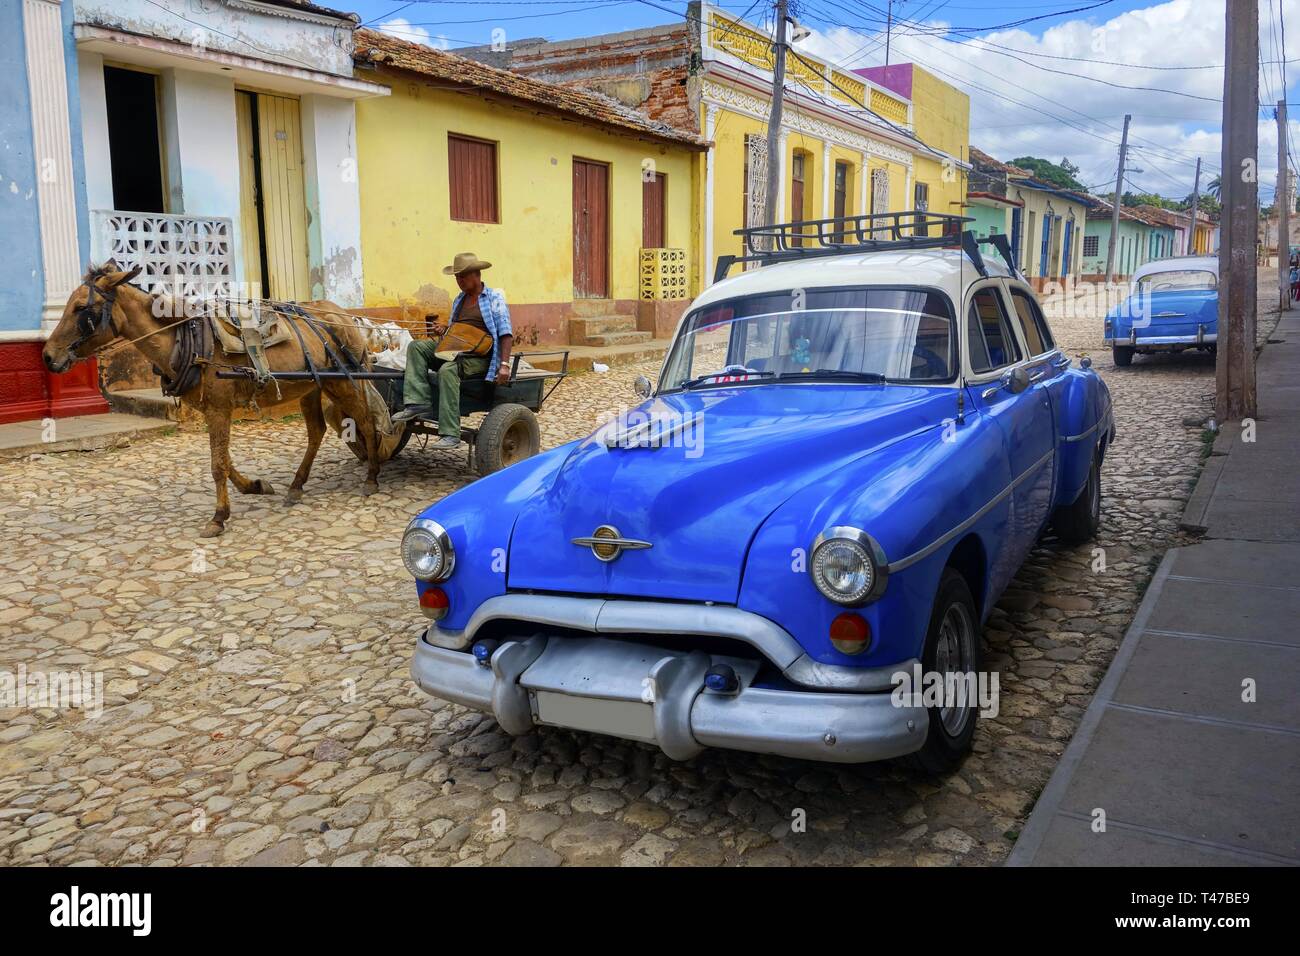 Old Man in carrozza a Cavallo e Classic Cuban Taxi Car su Cobblestone Street che mostra modalità di trasporto contrastanti e la tipica vita cittadina di Trinidad, Cuba Foto Stock